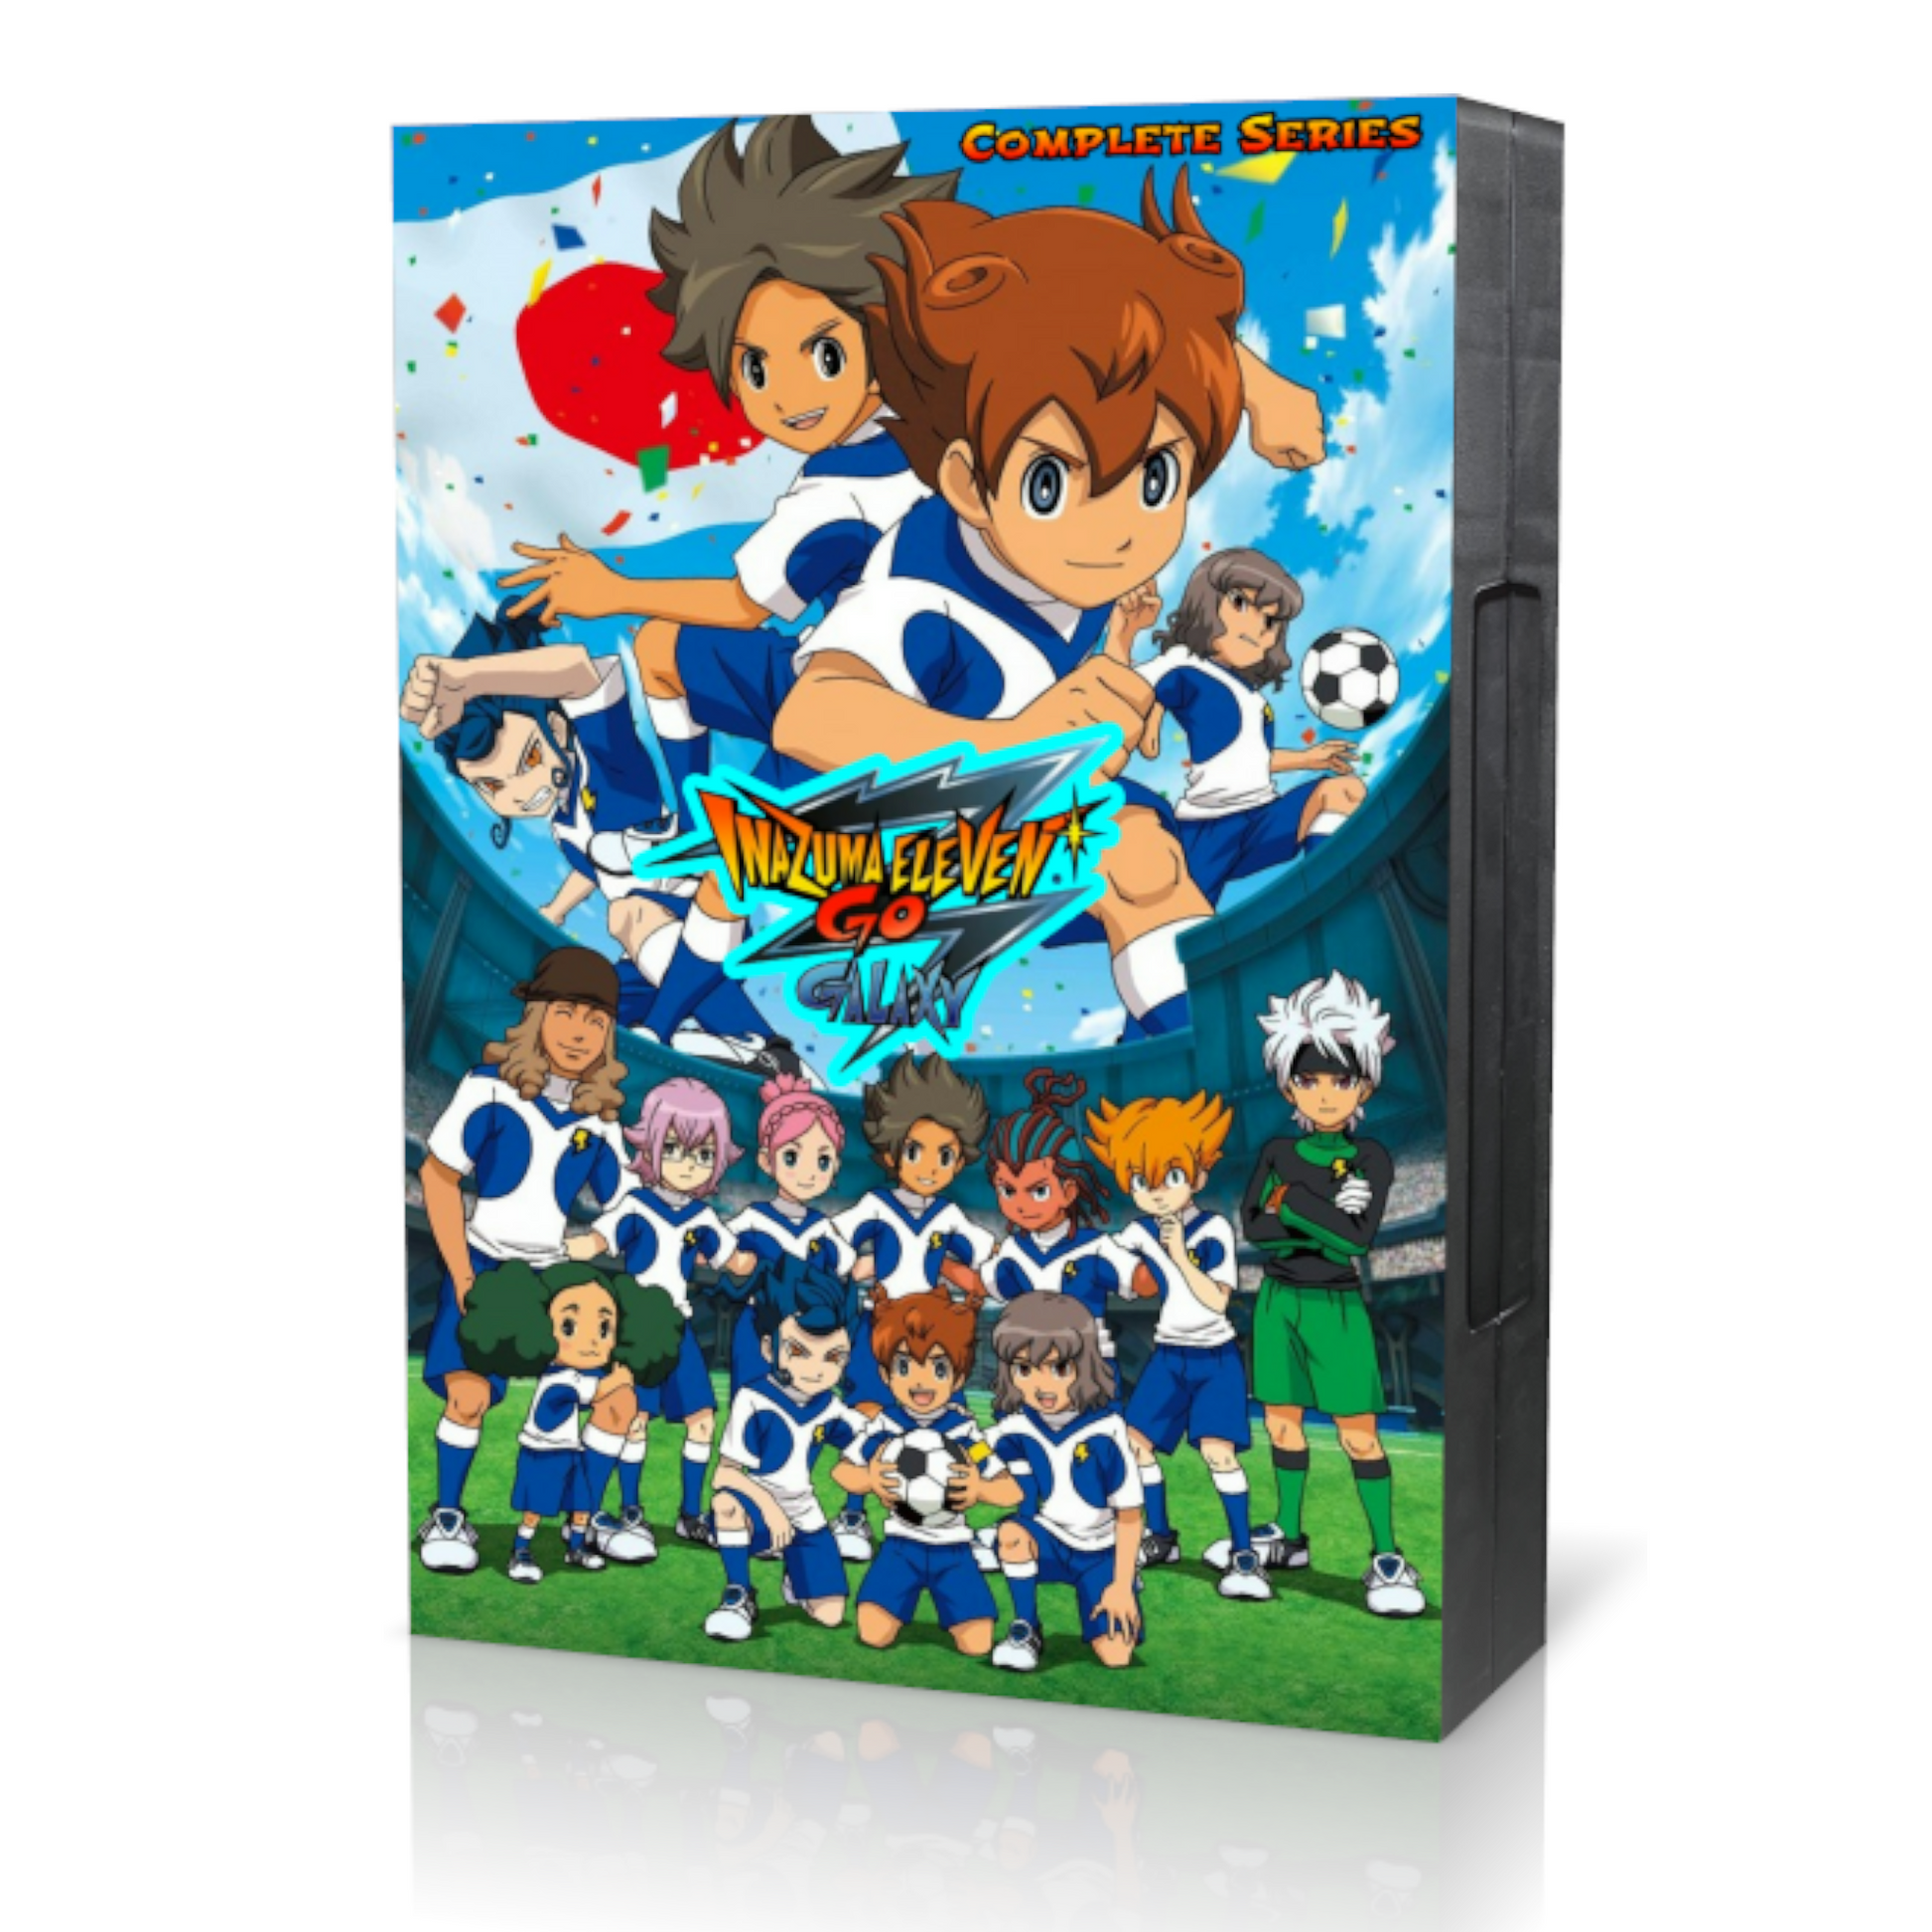 Inazuma Eleven GO Galaxy Complete DVD Set - RetroAnimation 